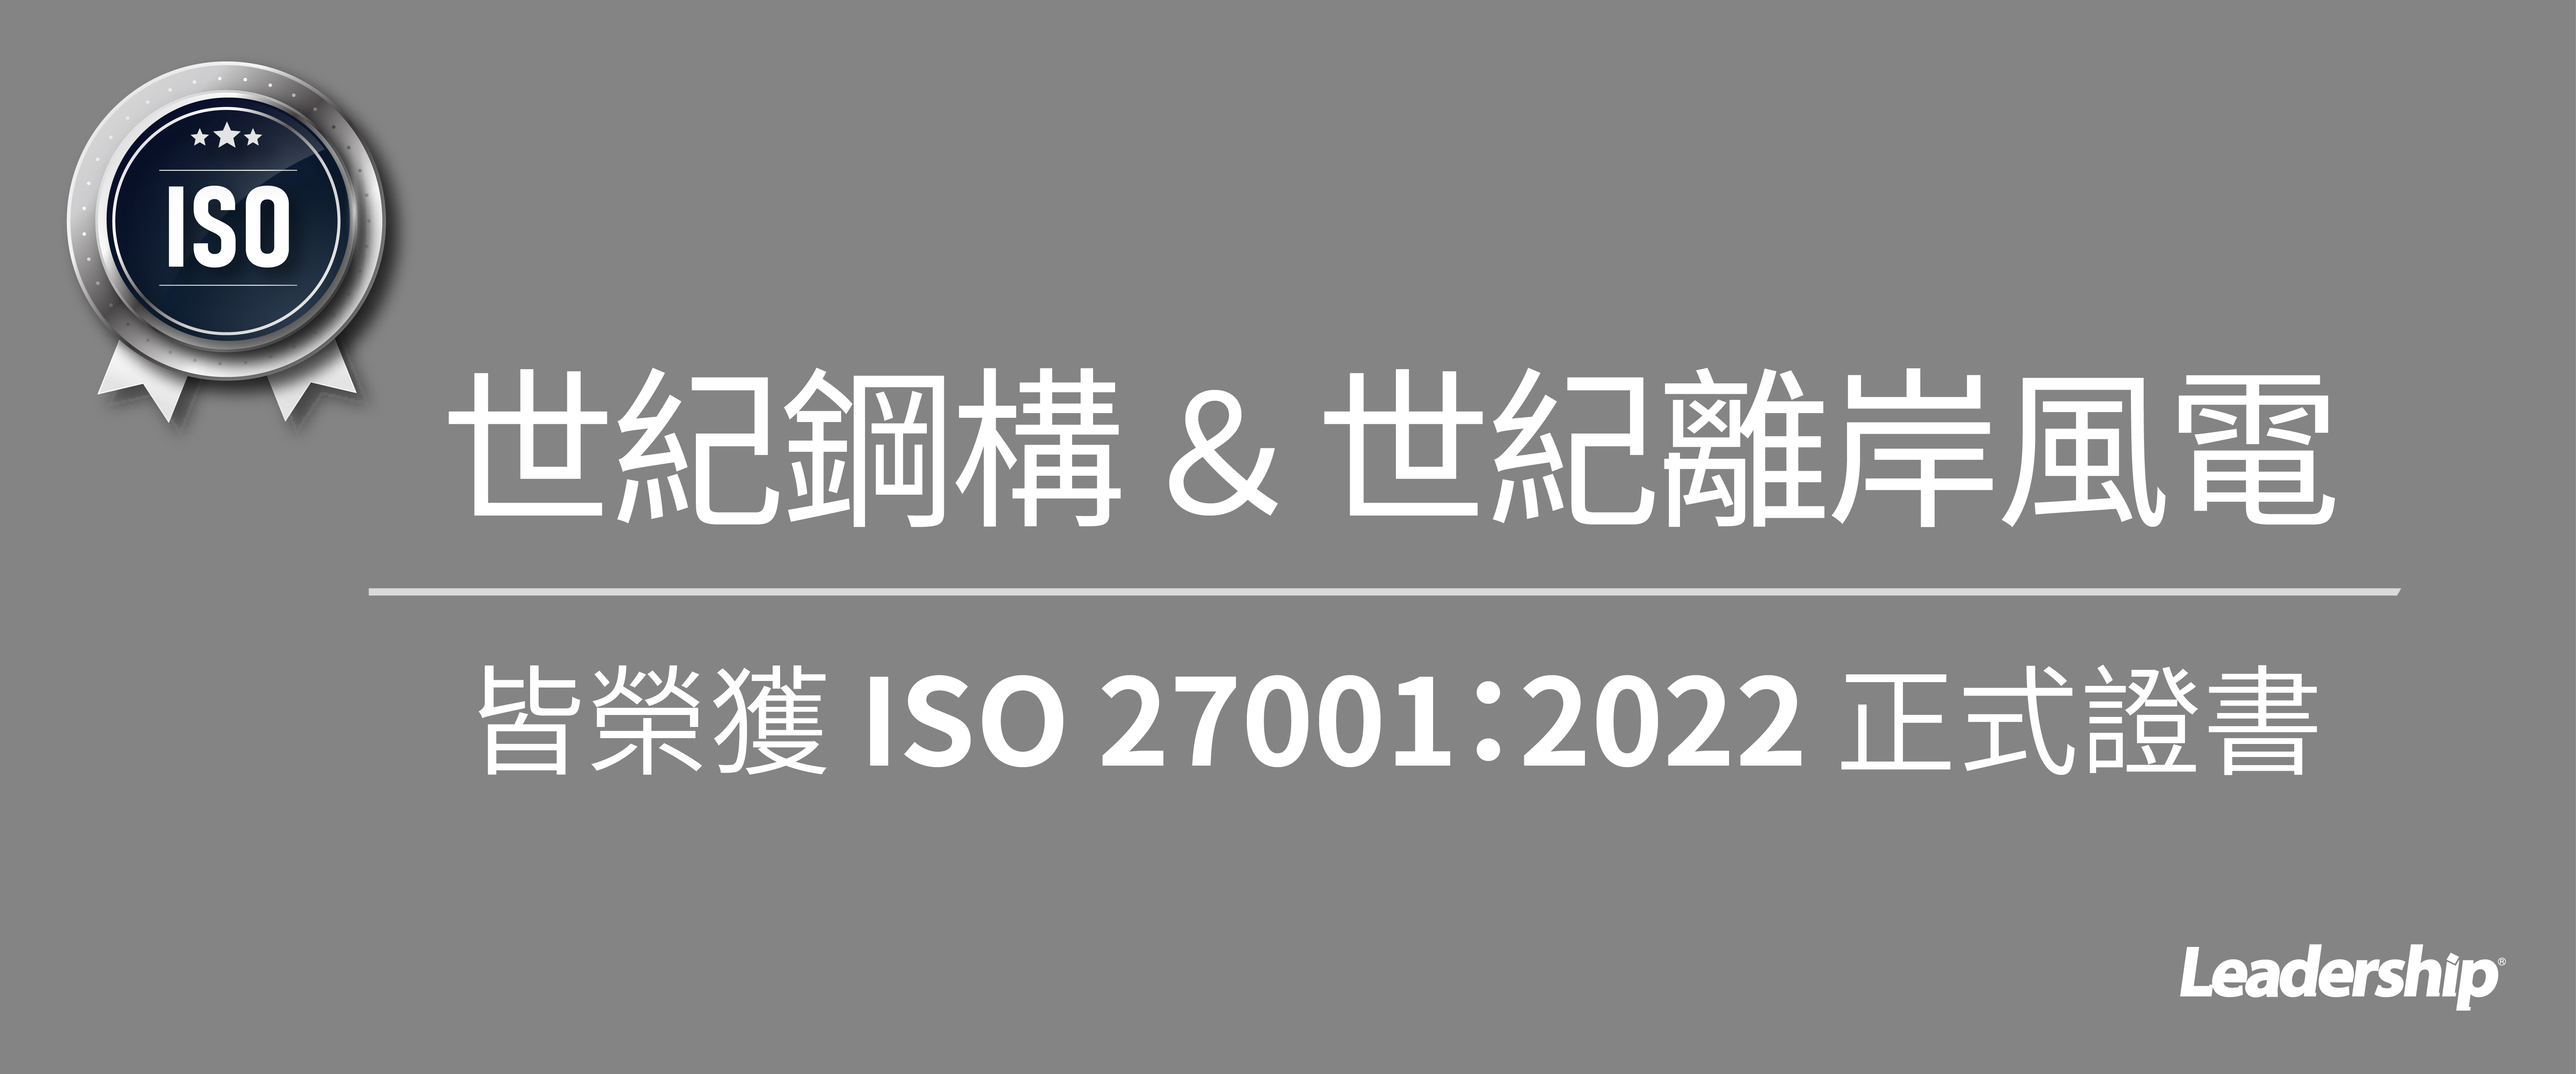 世紀鋼構＆世紀風電 皆榮獲 ISO 27001：2022 證書